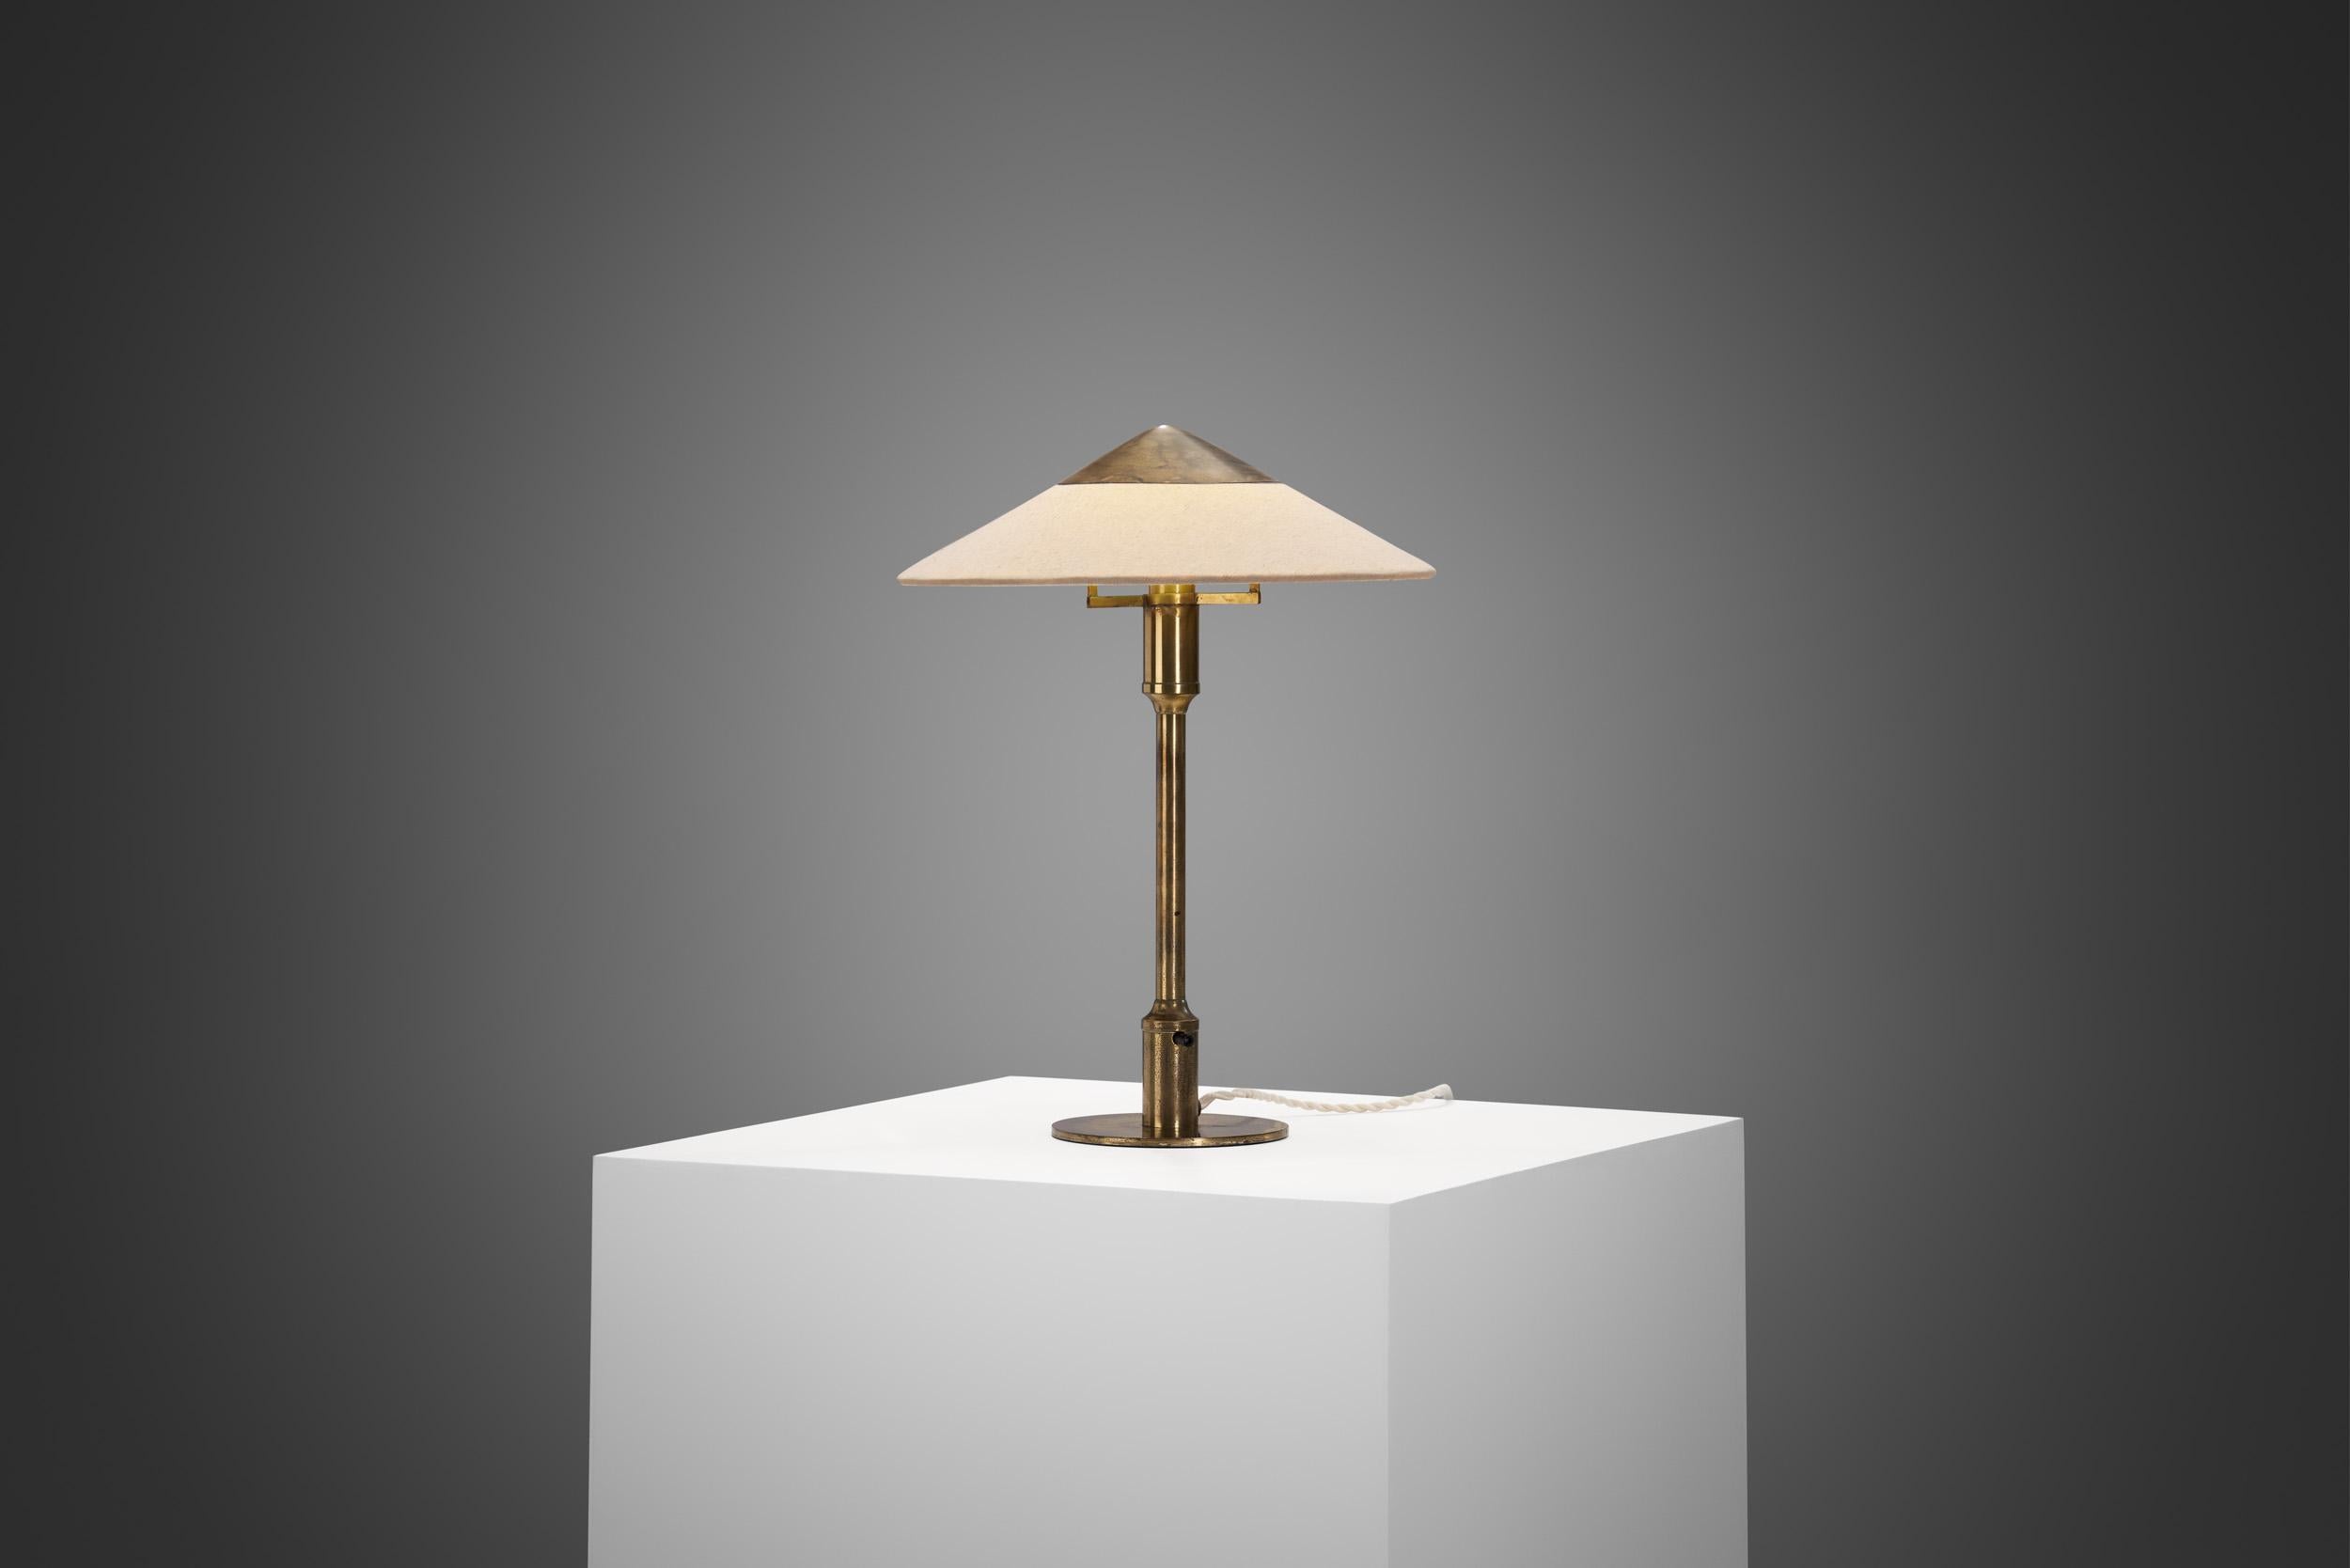 Fog & Mörup était un légendaire fabricant danois de luminaires, surtout connu des collectionneurs pour ses lampes épurées et sculpturales. Ses luminaires vintage sont idéaux pour les amateurs de design qui cherchent à introduire une touche